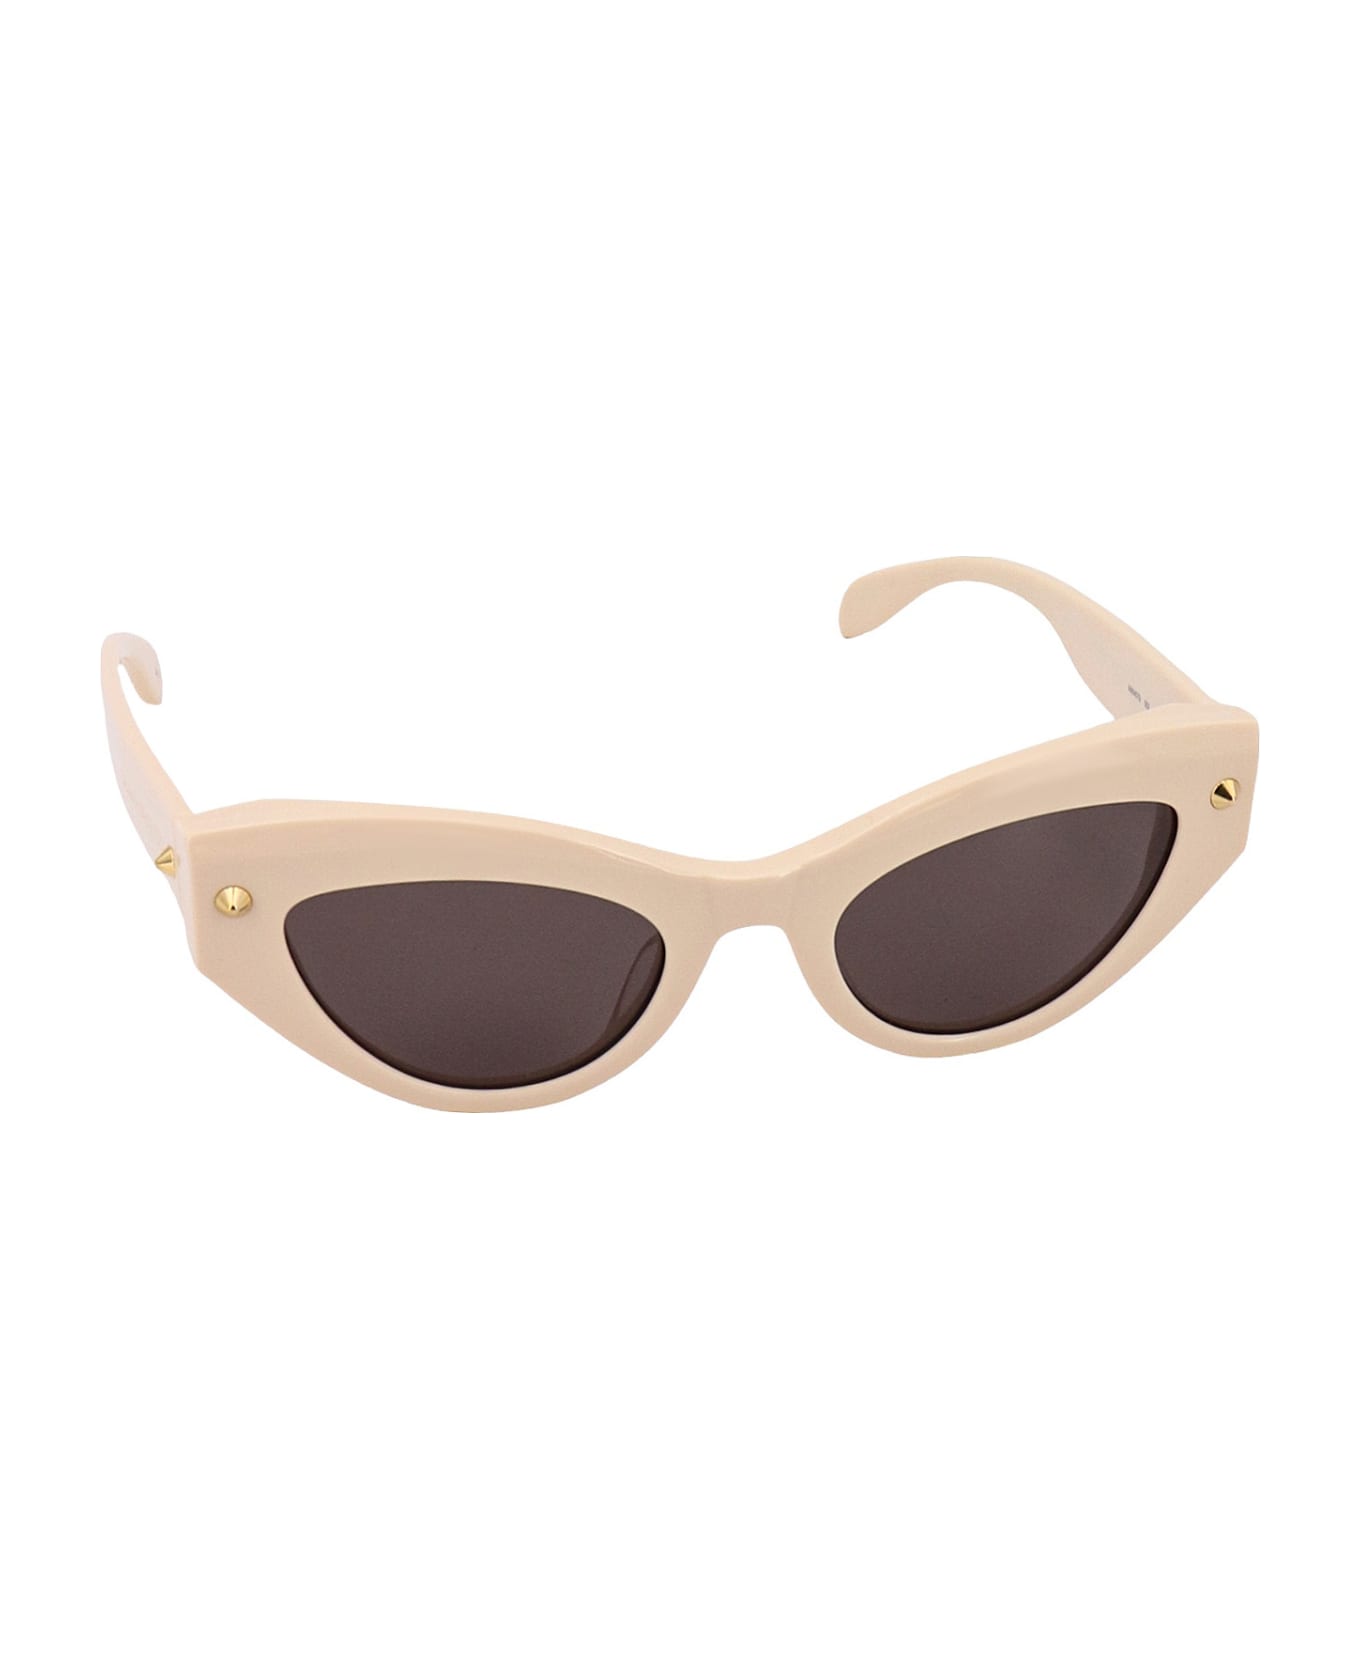 Alexander McQueen Eyewear Sunglasses - Beige